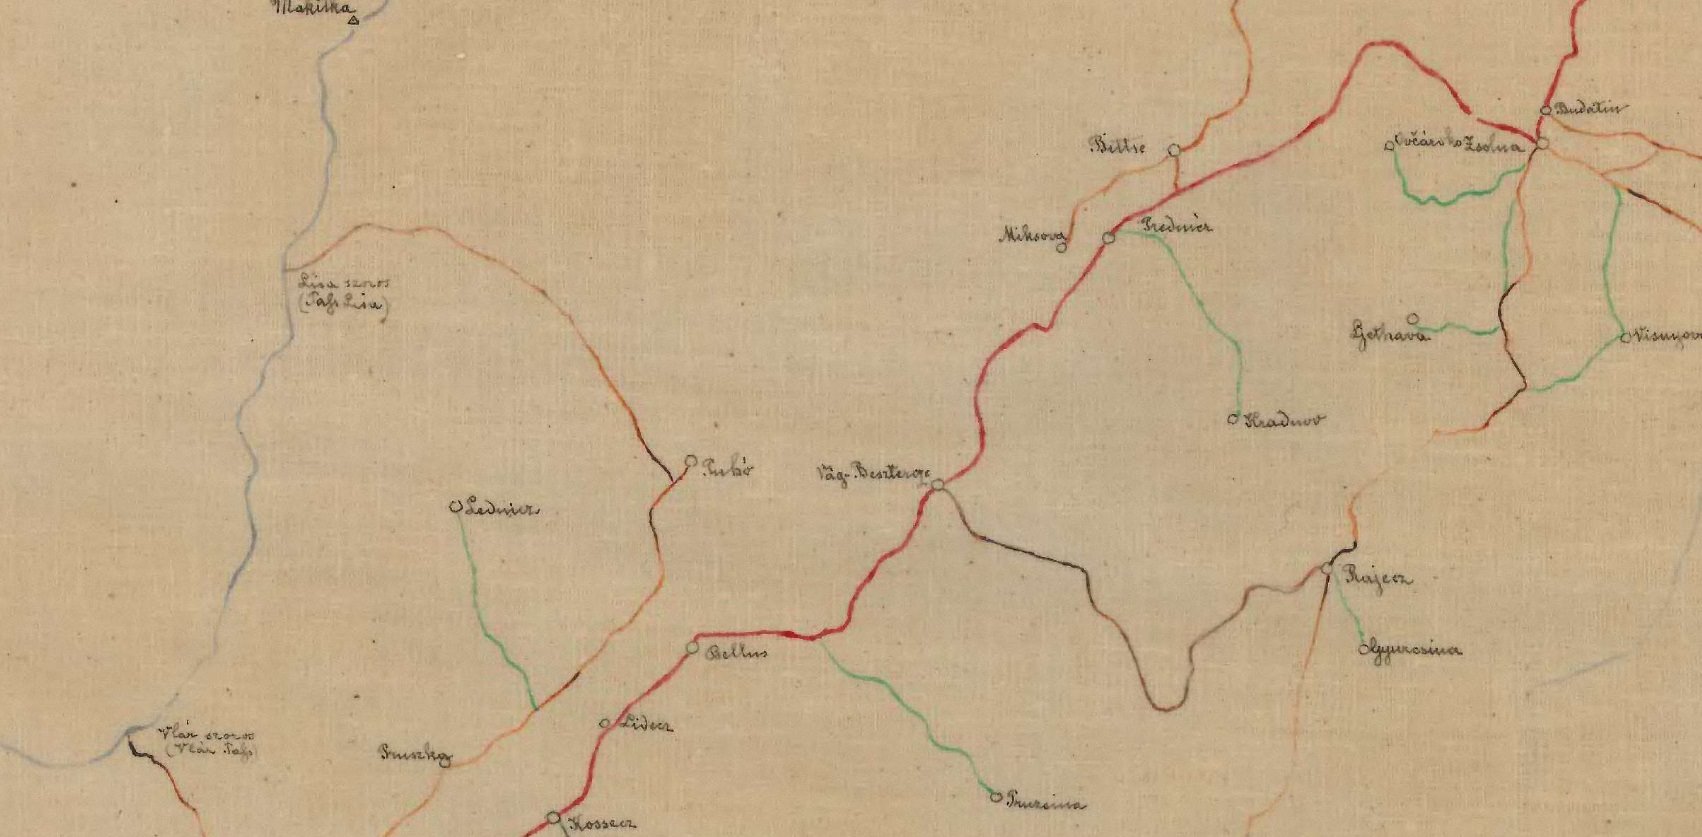 Cestná sieť v okolí Púchova na mape z roku 1869